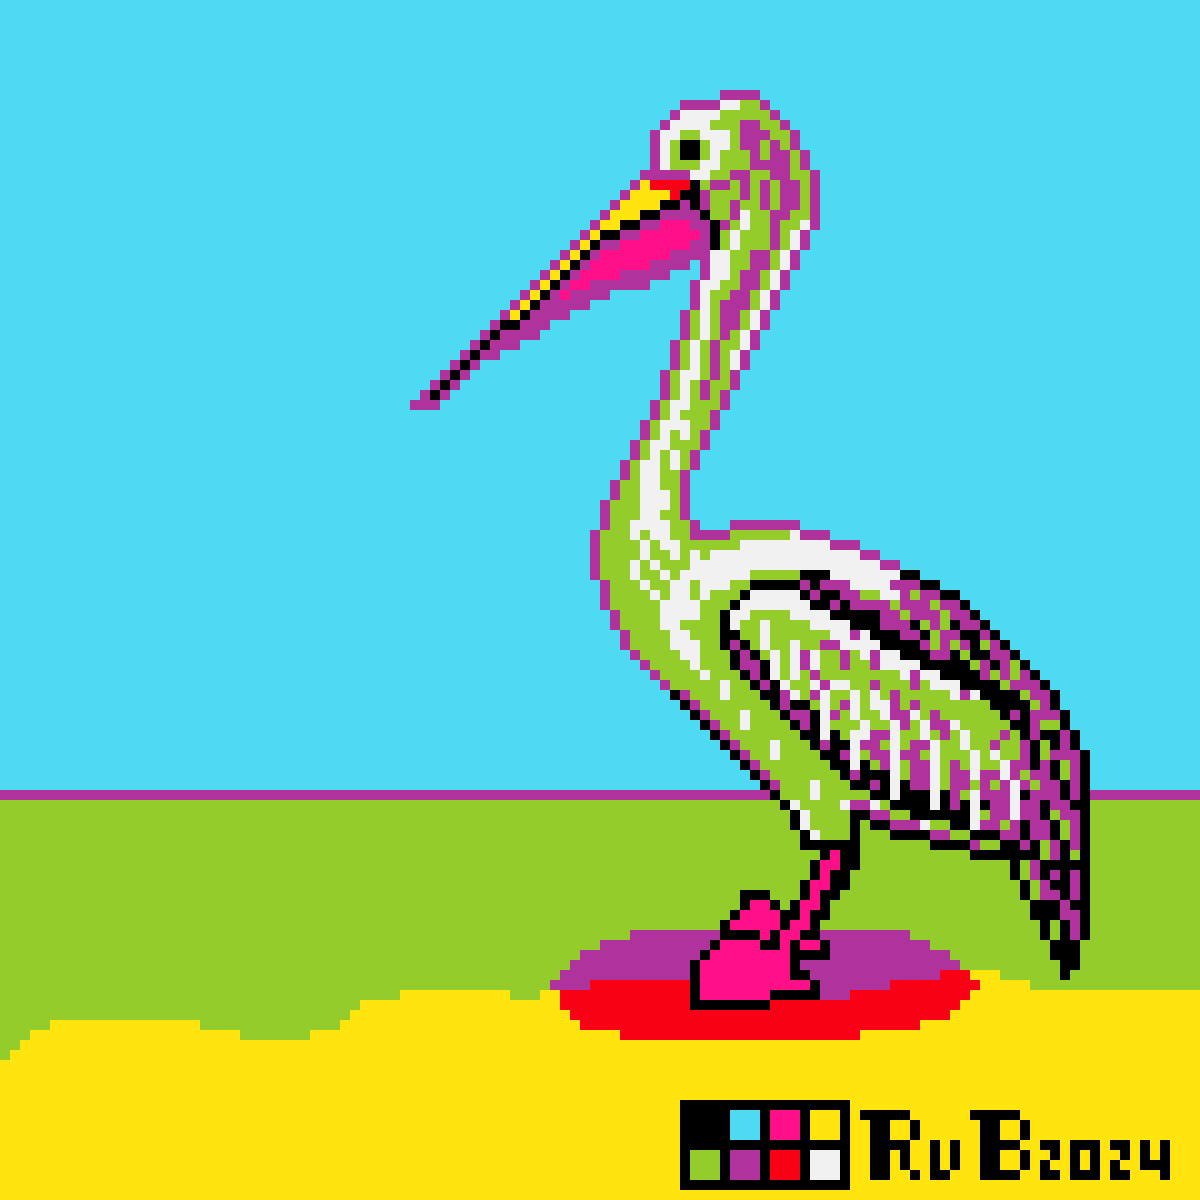 pixel art of a pelican standing on a beach